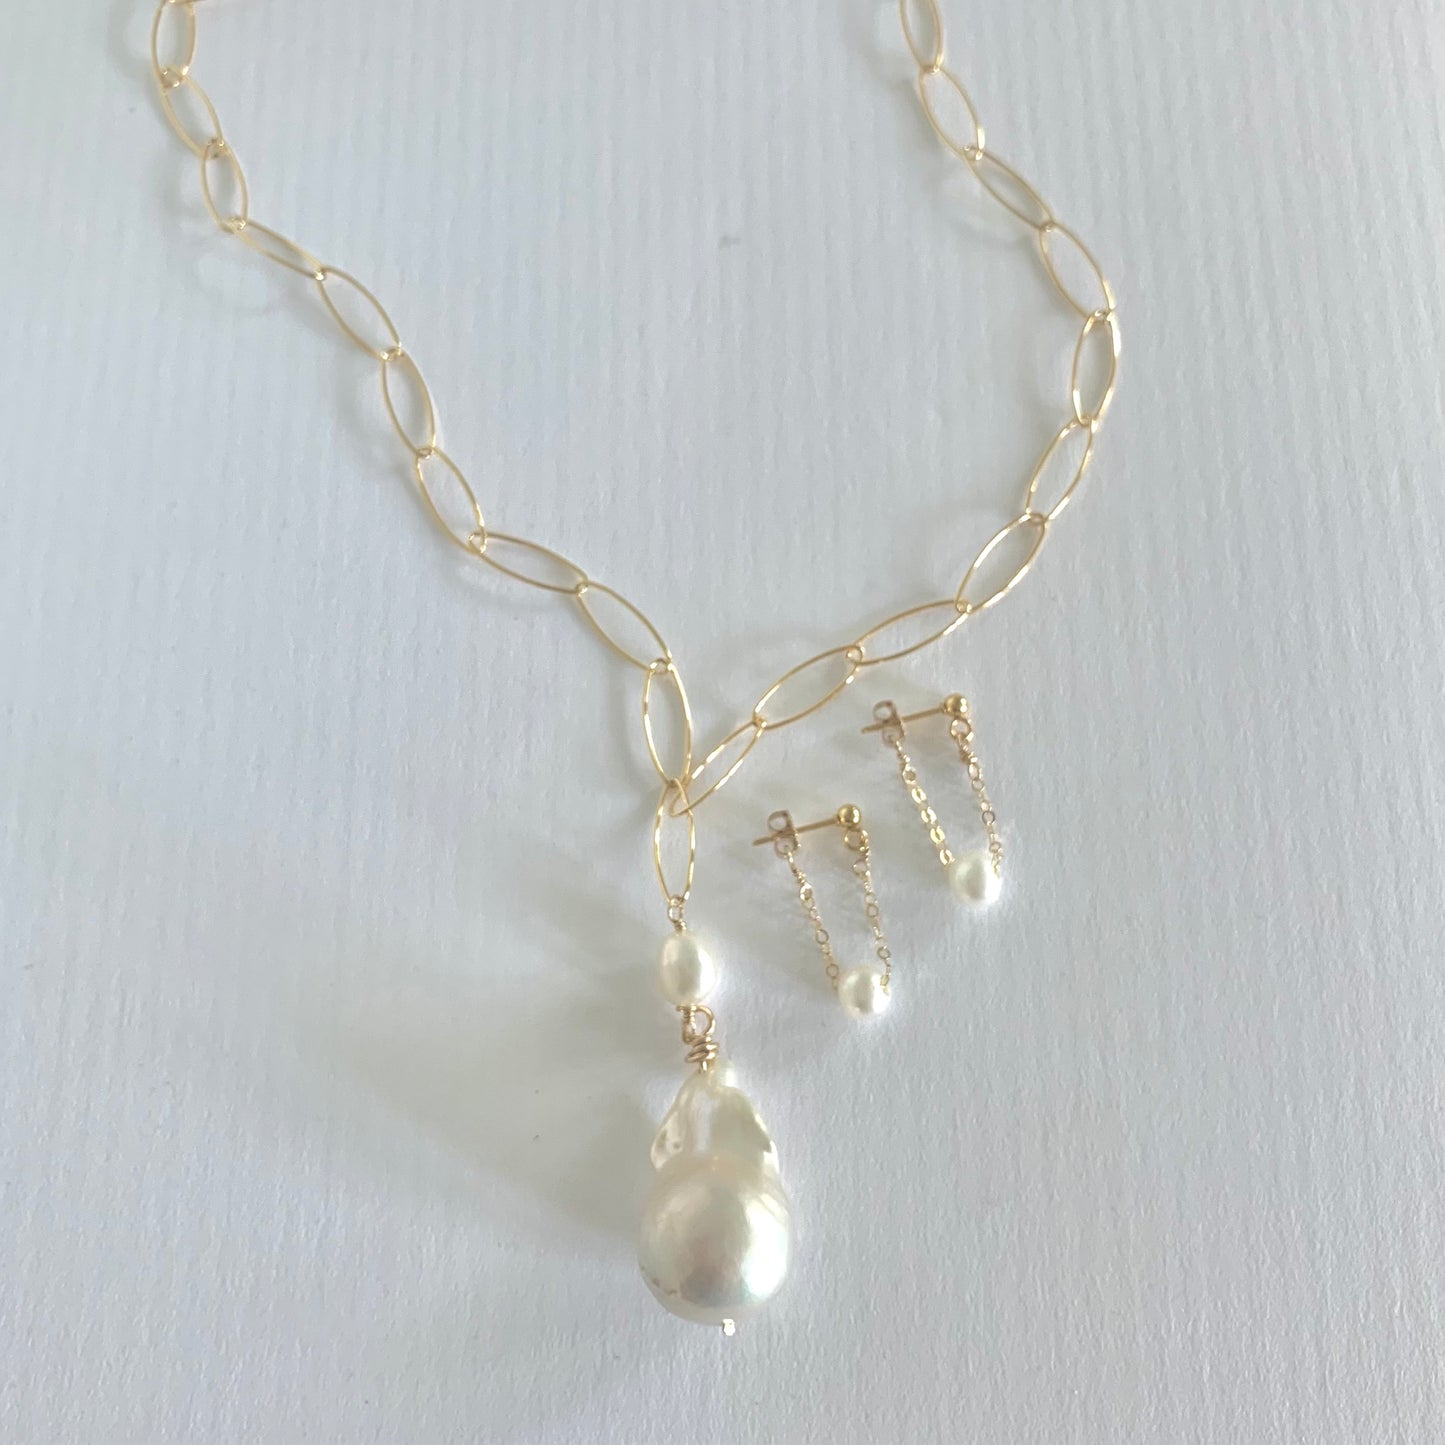 Aspen long XL baroque necklace